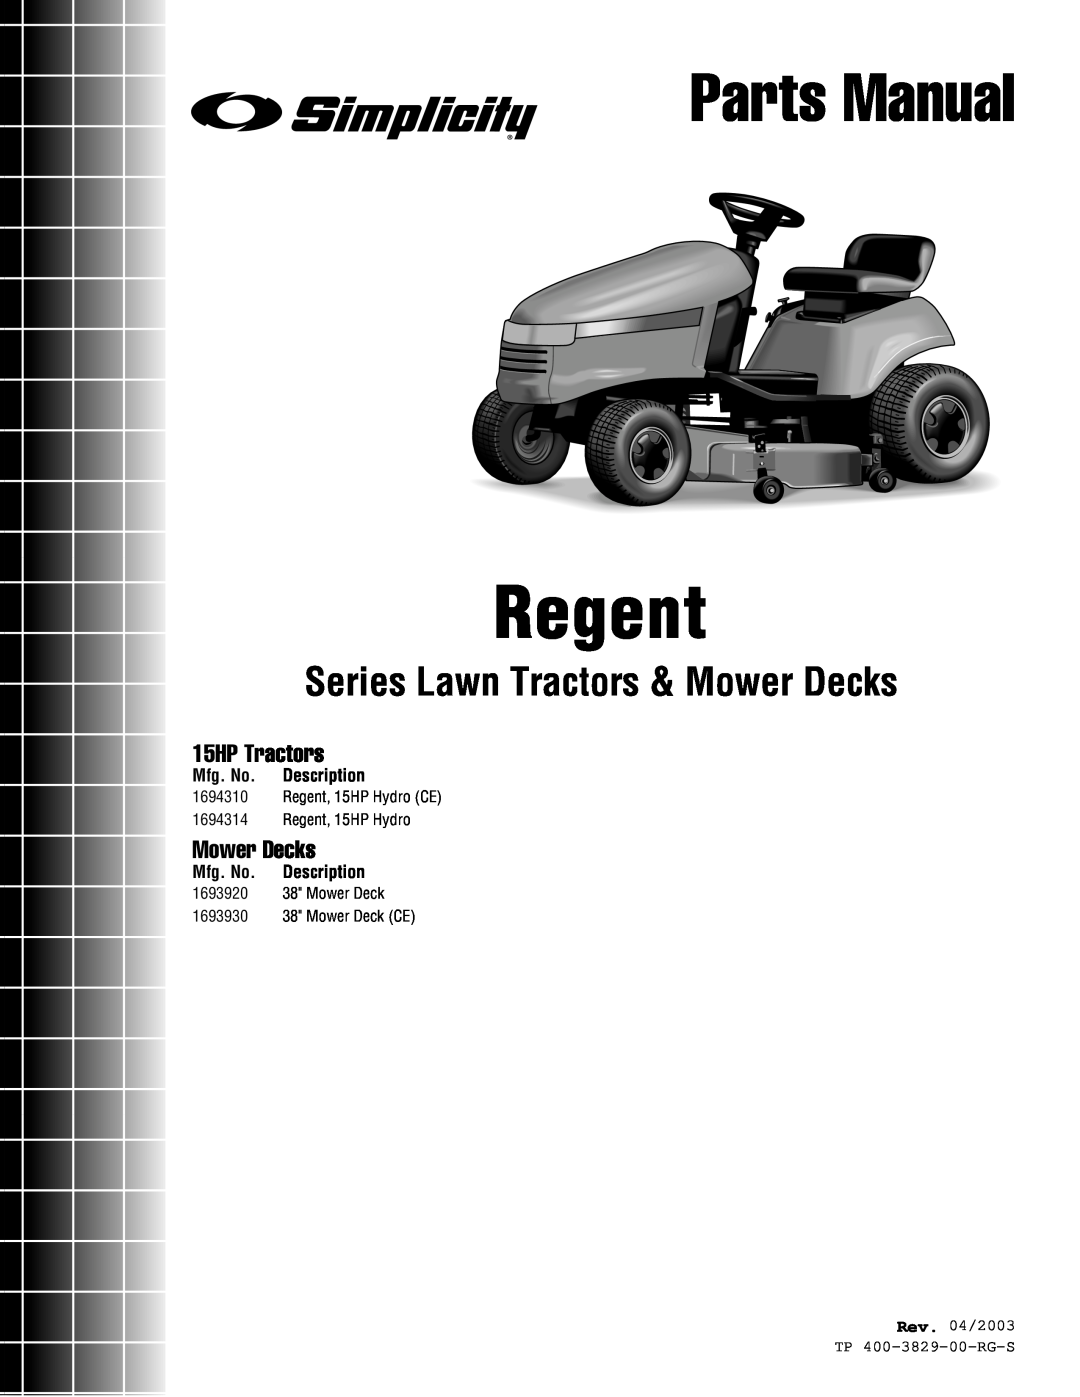 Simplicity 1693930 manual Mfg. No. Description, Rev. 04/2003 TP 400-3829-00-RG-S, Regent, Parts Manual, 15HP Tractors 